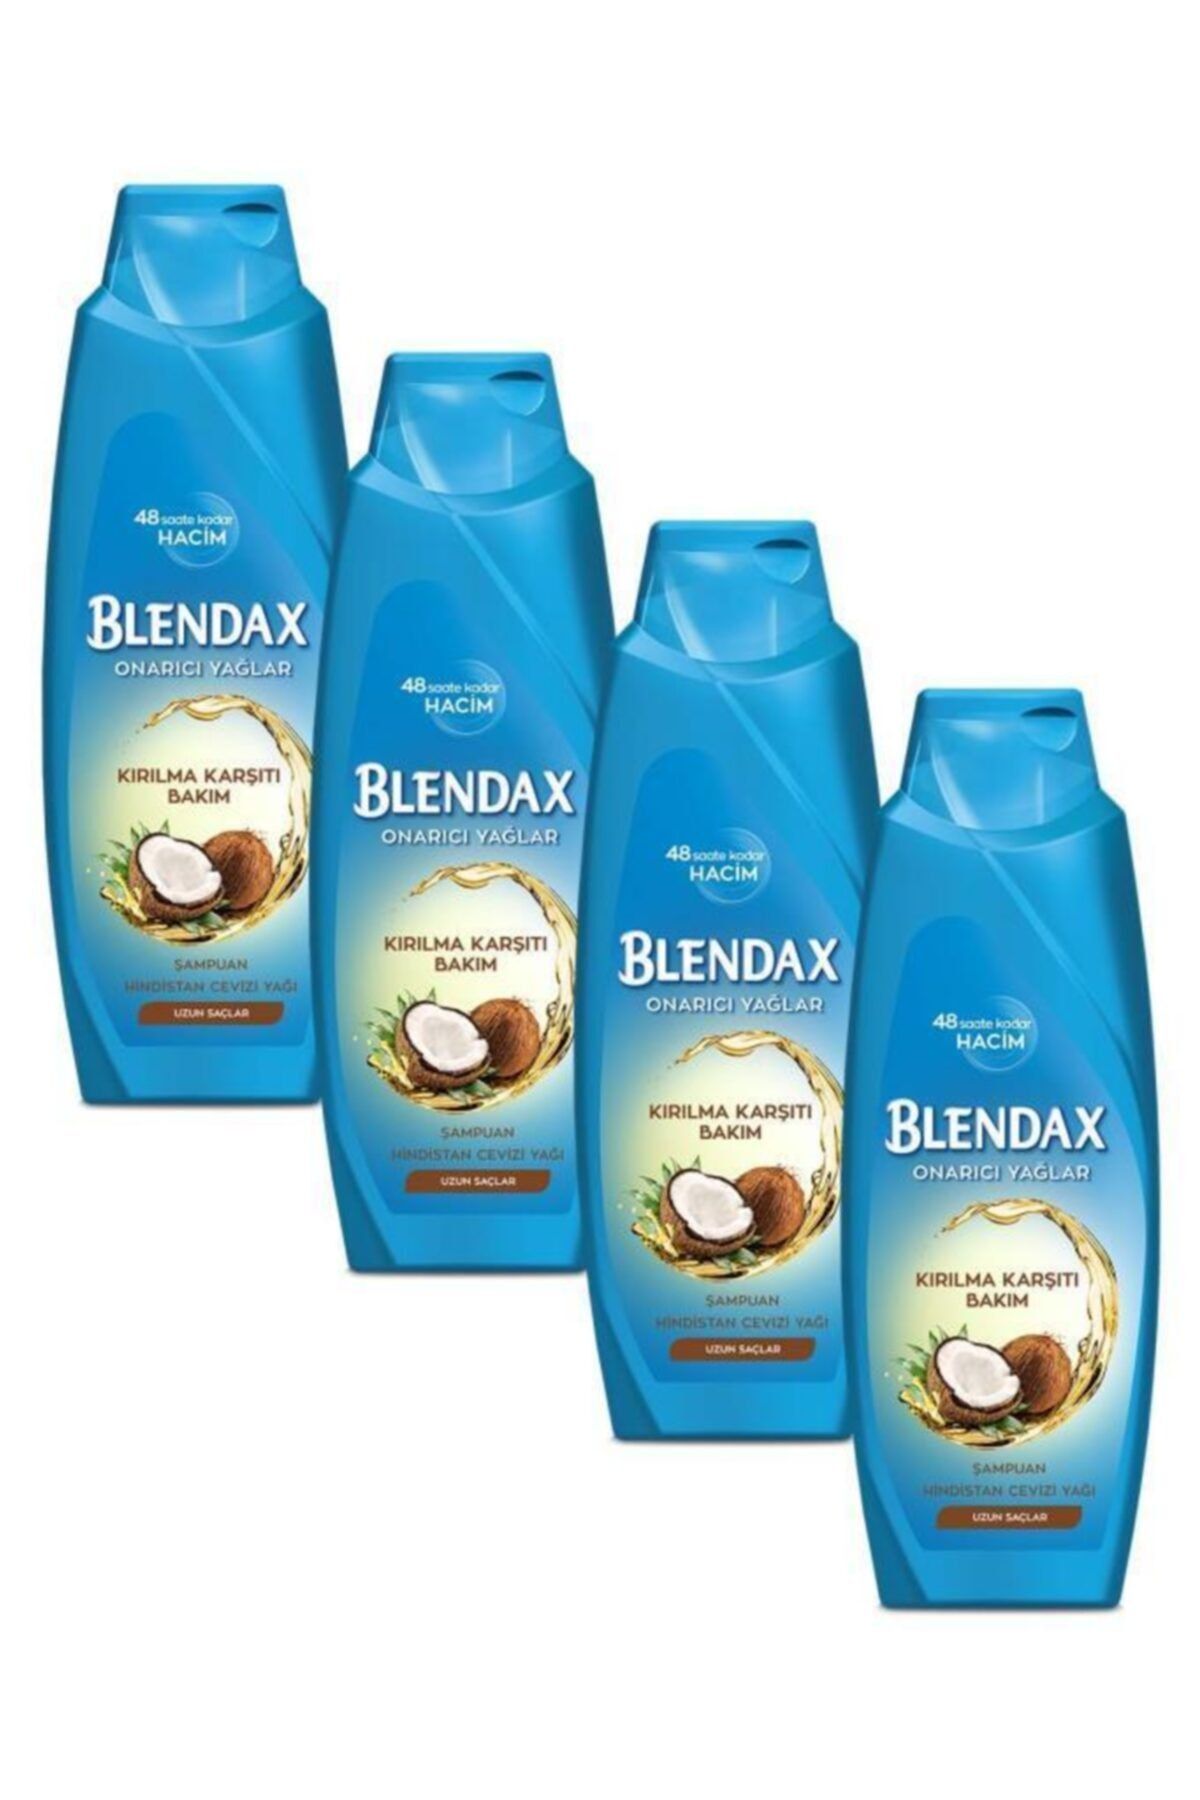 Blendax Kırılma Karşıtı Bakım - Onarıcı Yağlar Hindistan Cevizi Yağı Şampuan 500 ml X 4 Adet